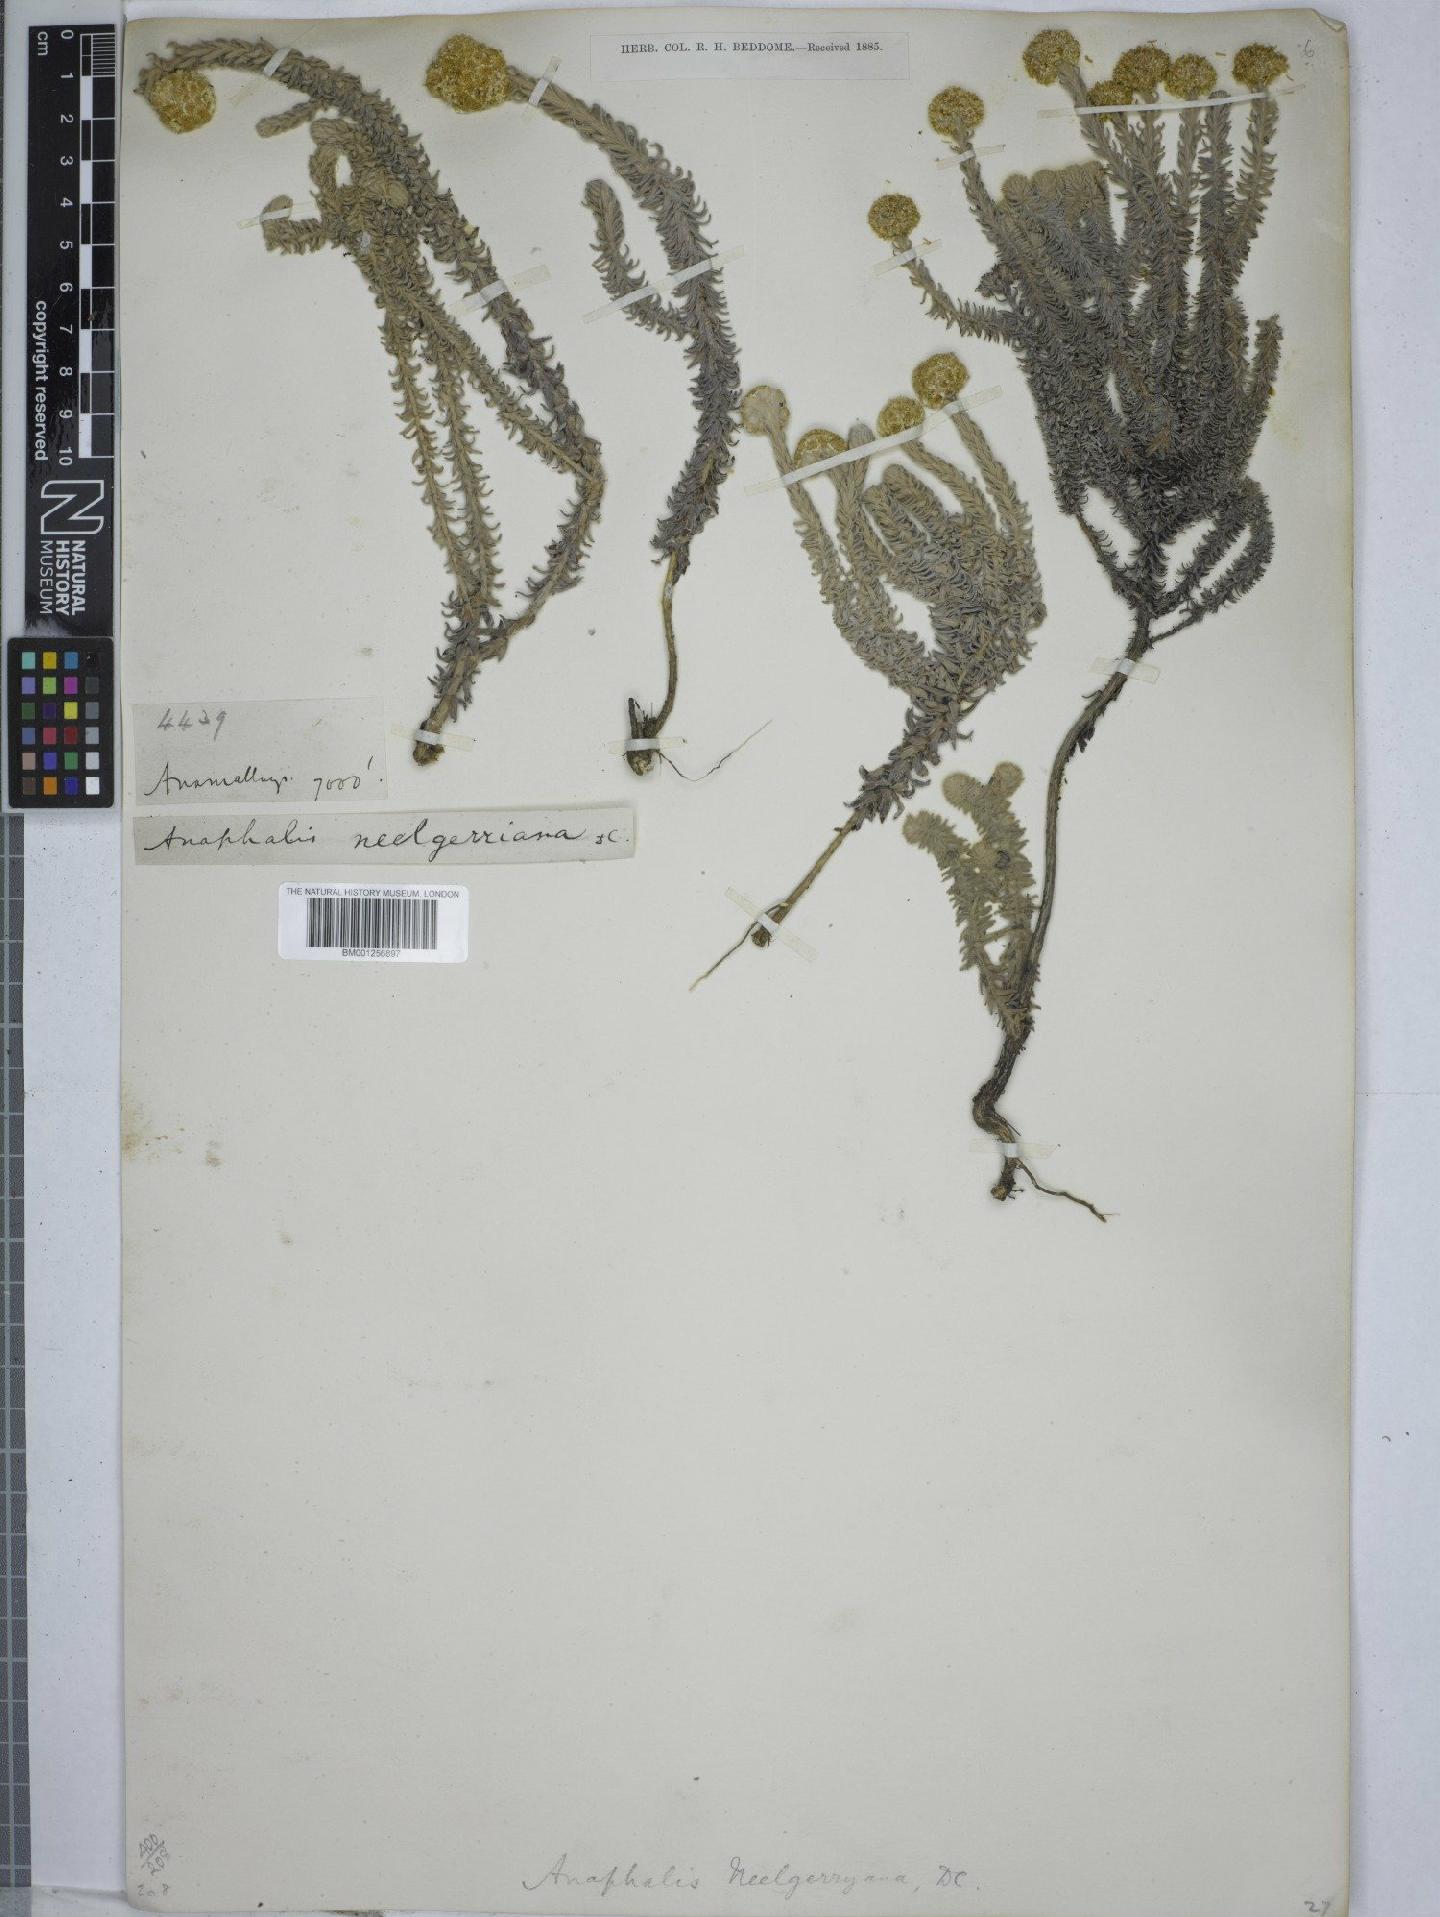 To NHMUK collection (Anaphalis neelgerryana (DC.) DC.; NHMUK:ecatalogue:9151701)